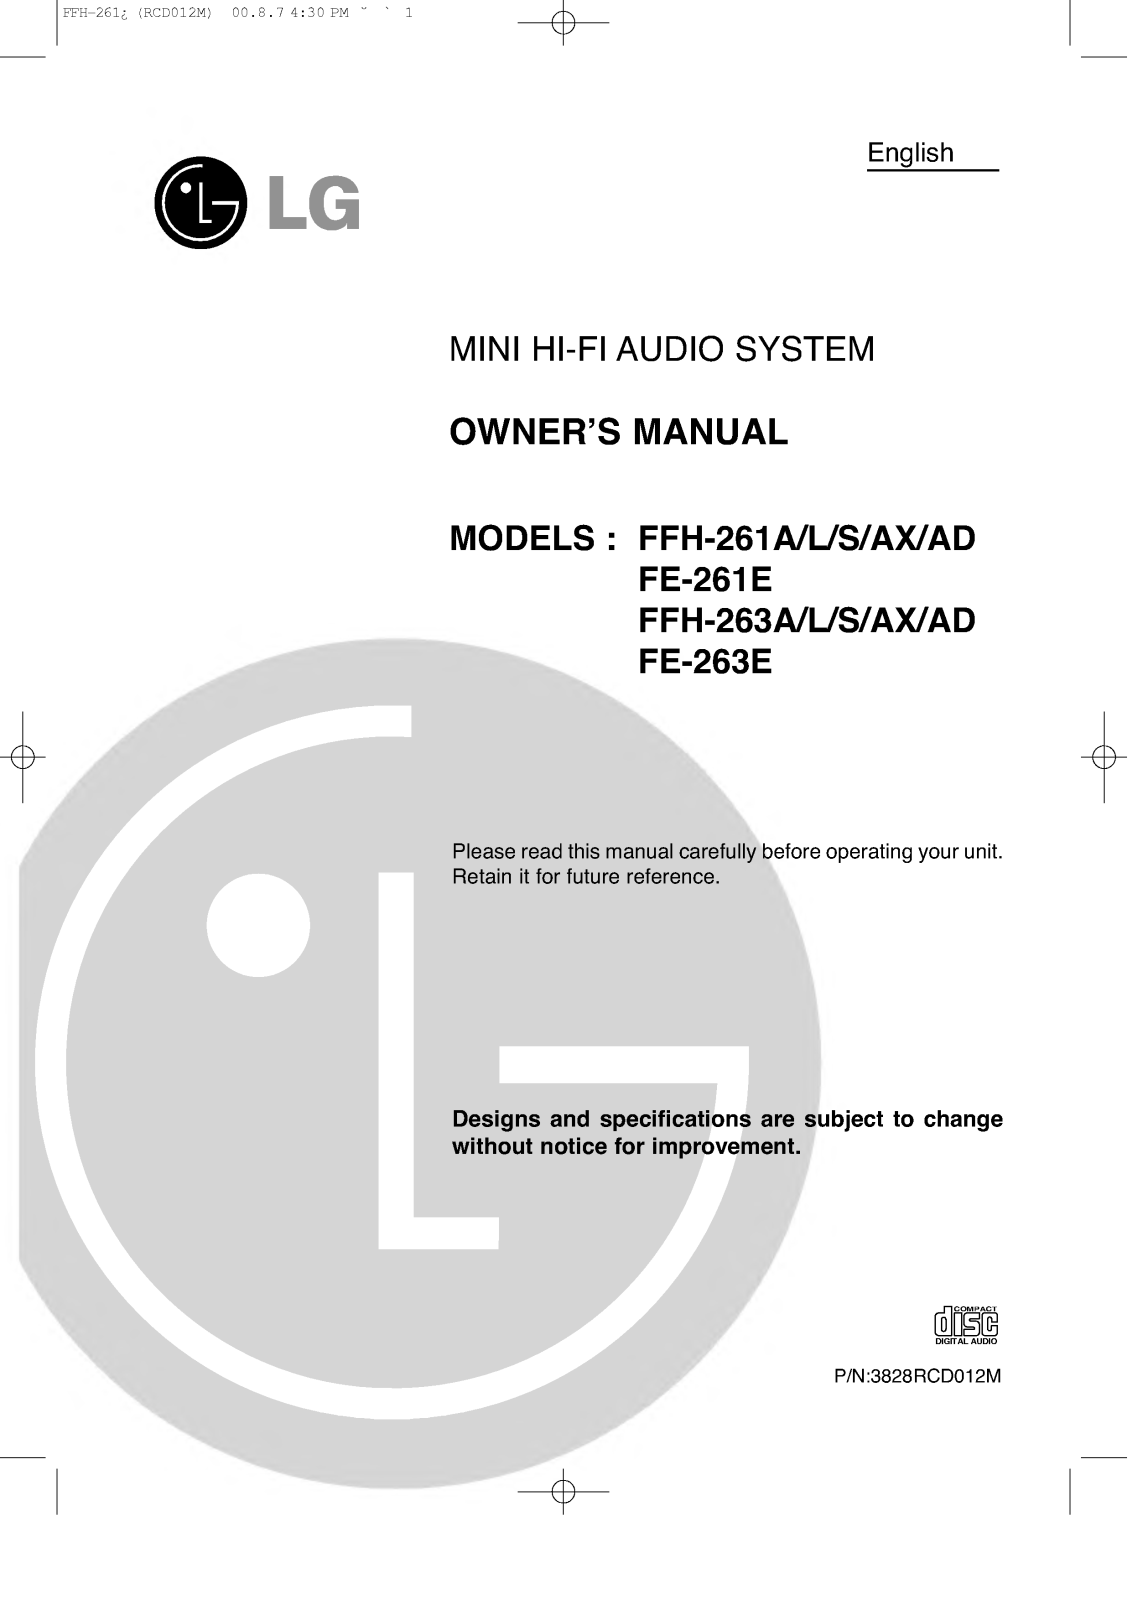 LG FFH-261A, FFH-263A, F-261A User Manual